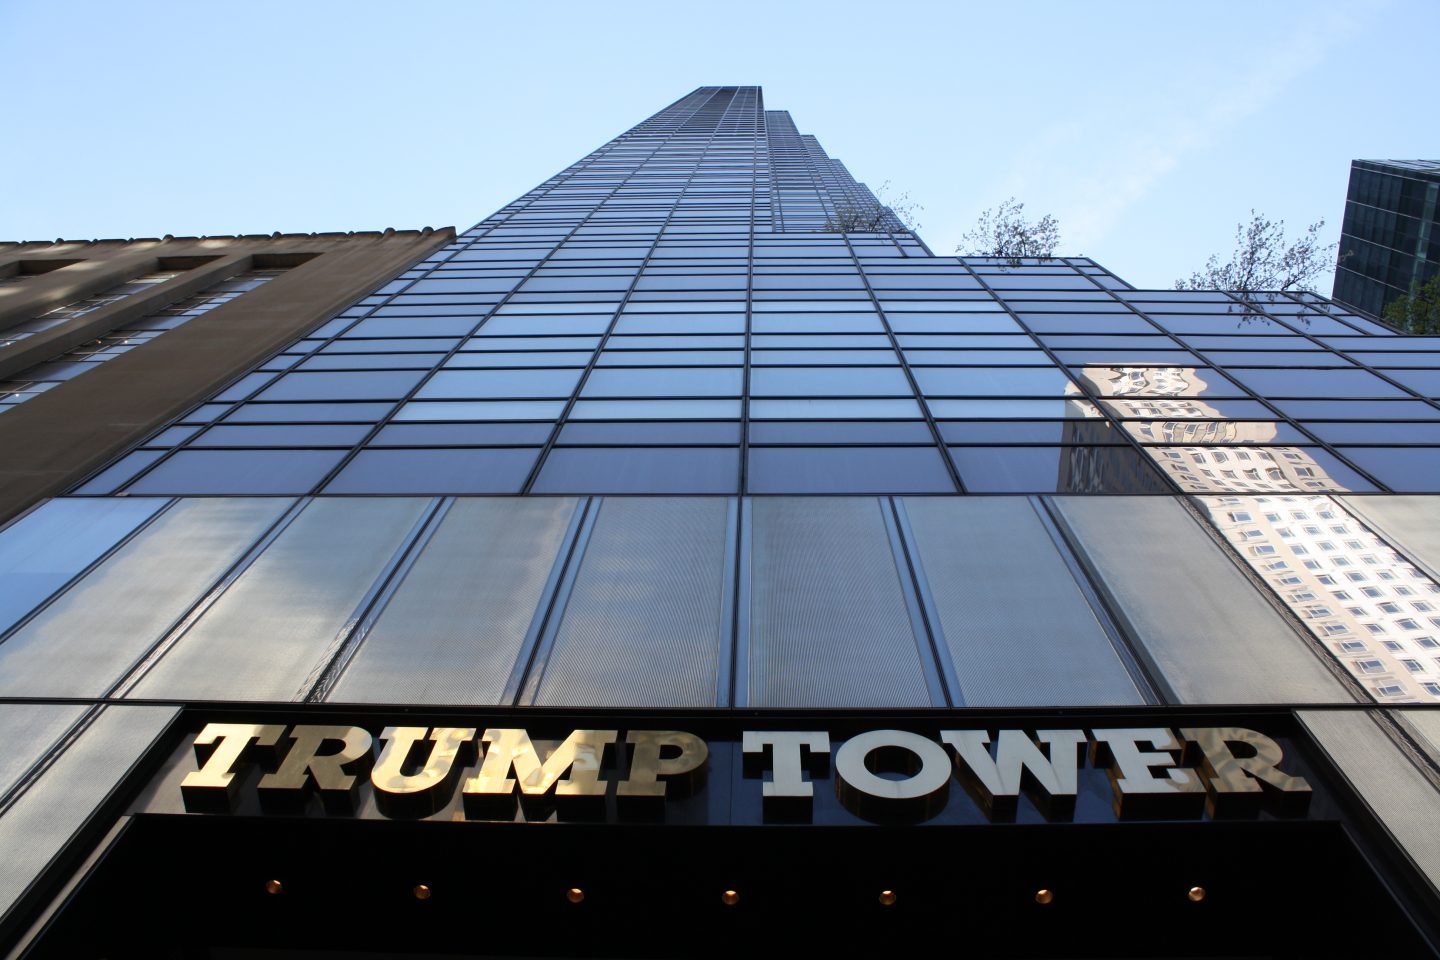 La torre Trump.